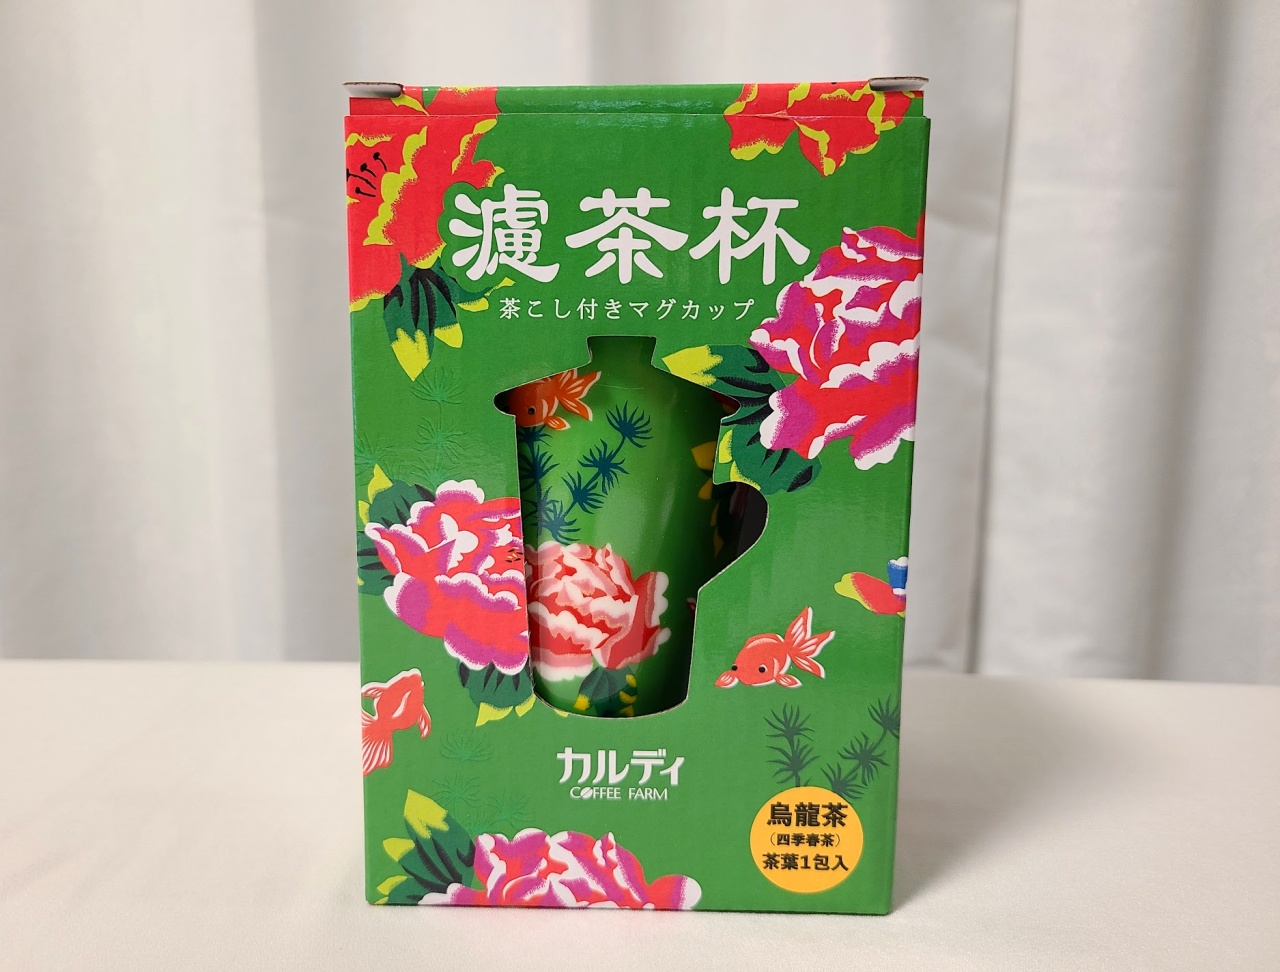 カルディ】台湾フェアで入手した『茶こし付きマグカップ』が超便利